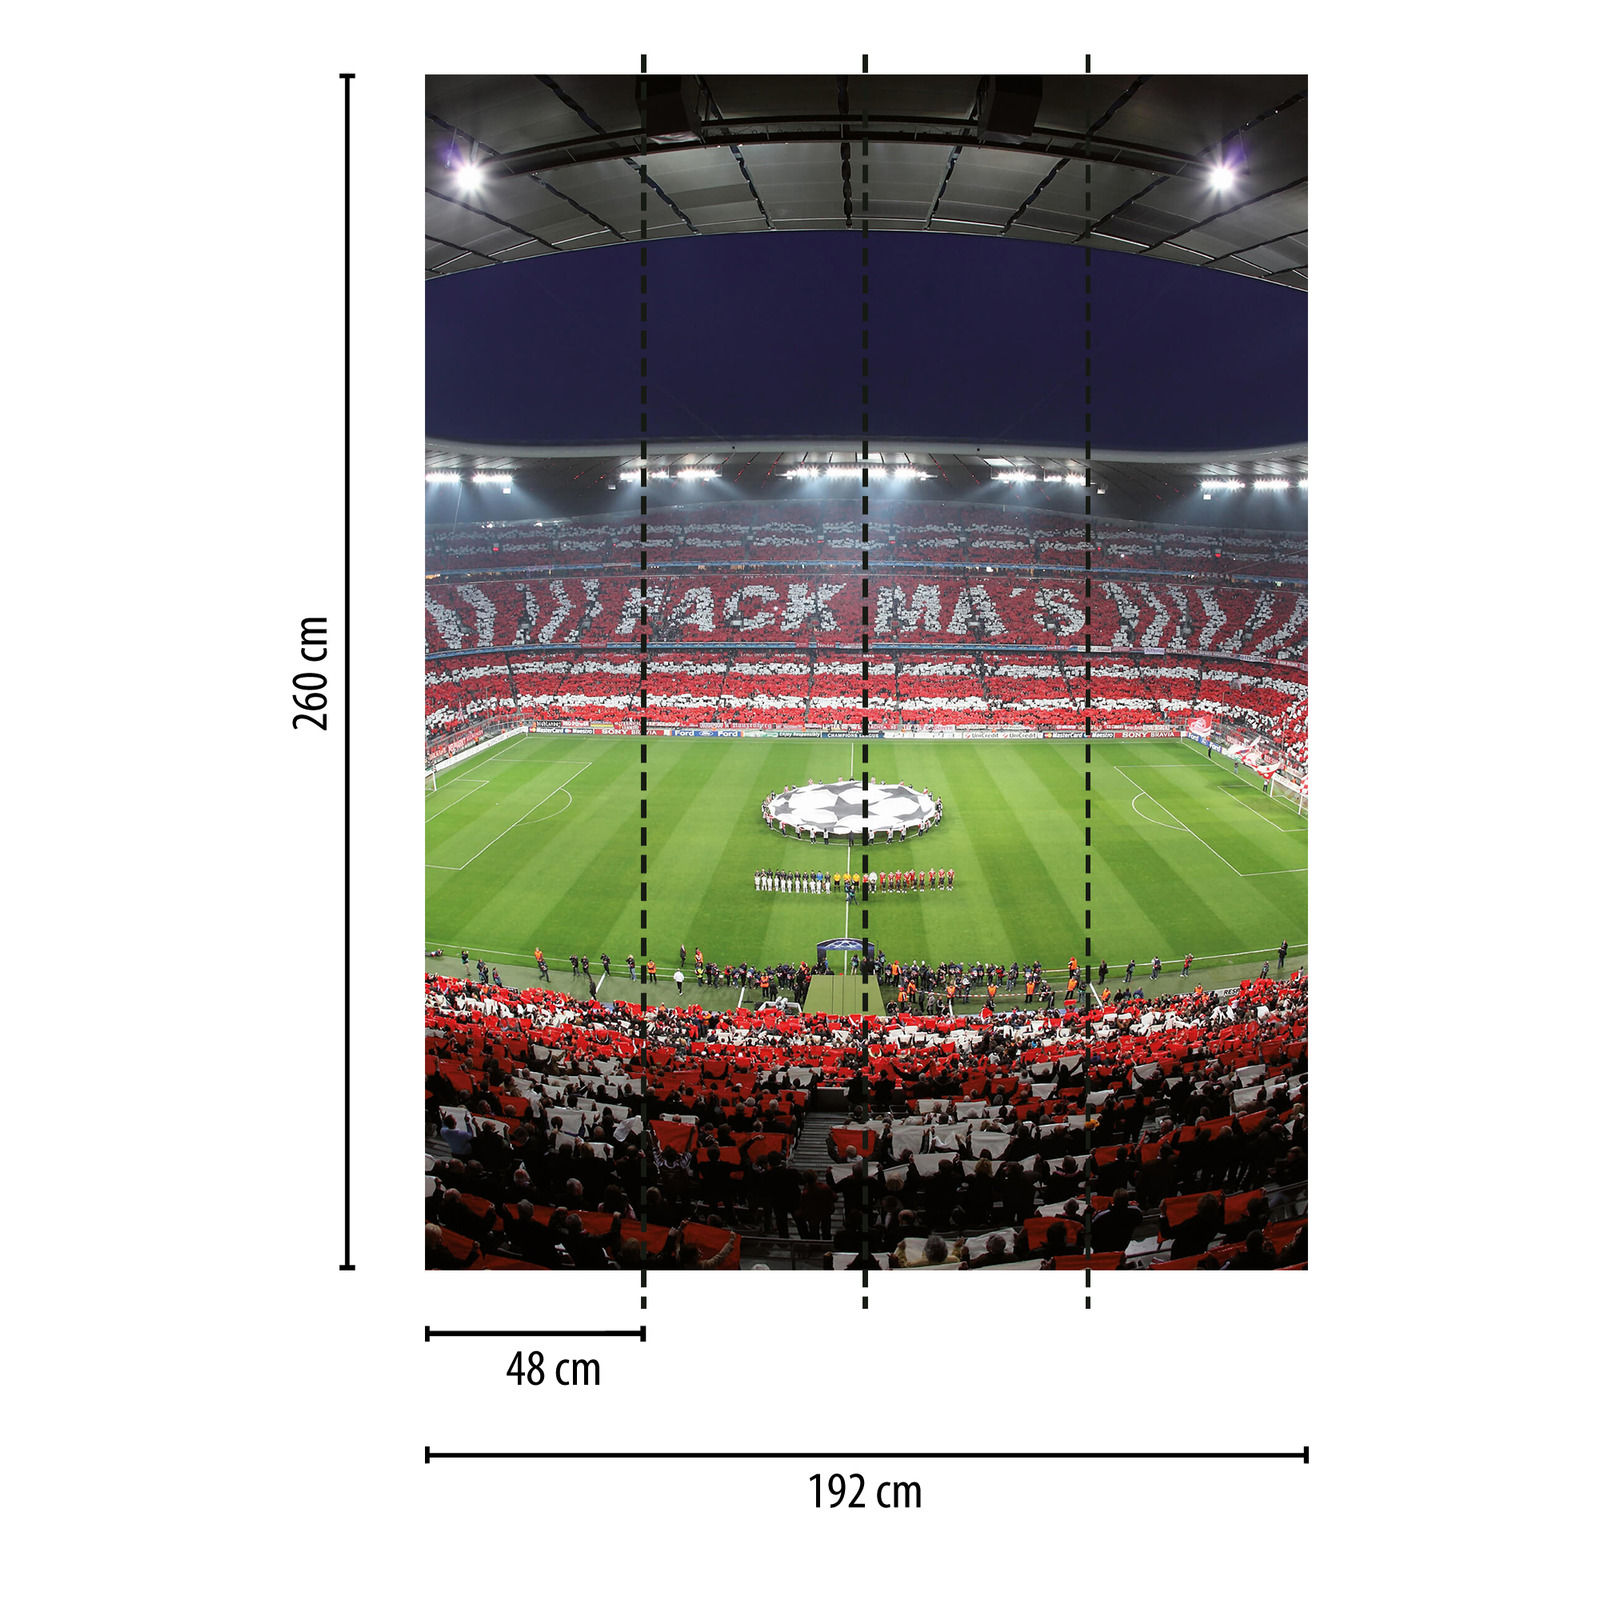             FCB Stadium Fotomurali Coreografia del tifoso, formato ritratto
        